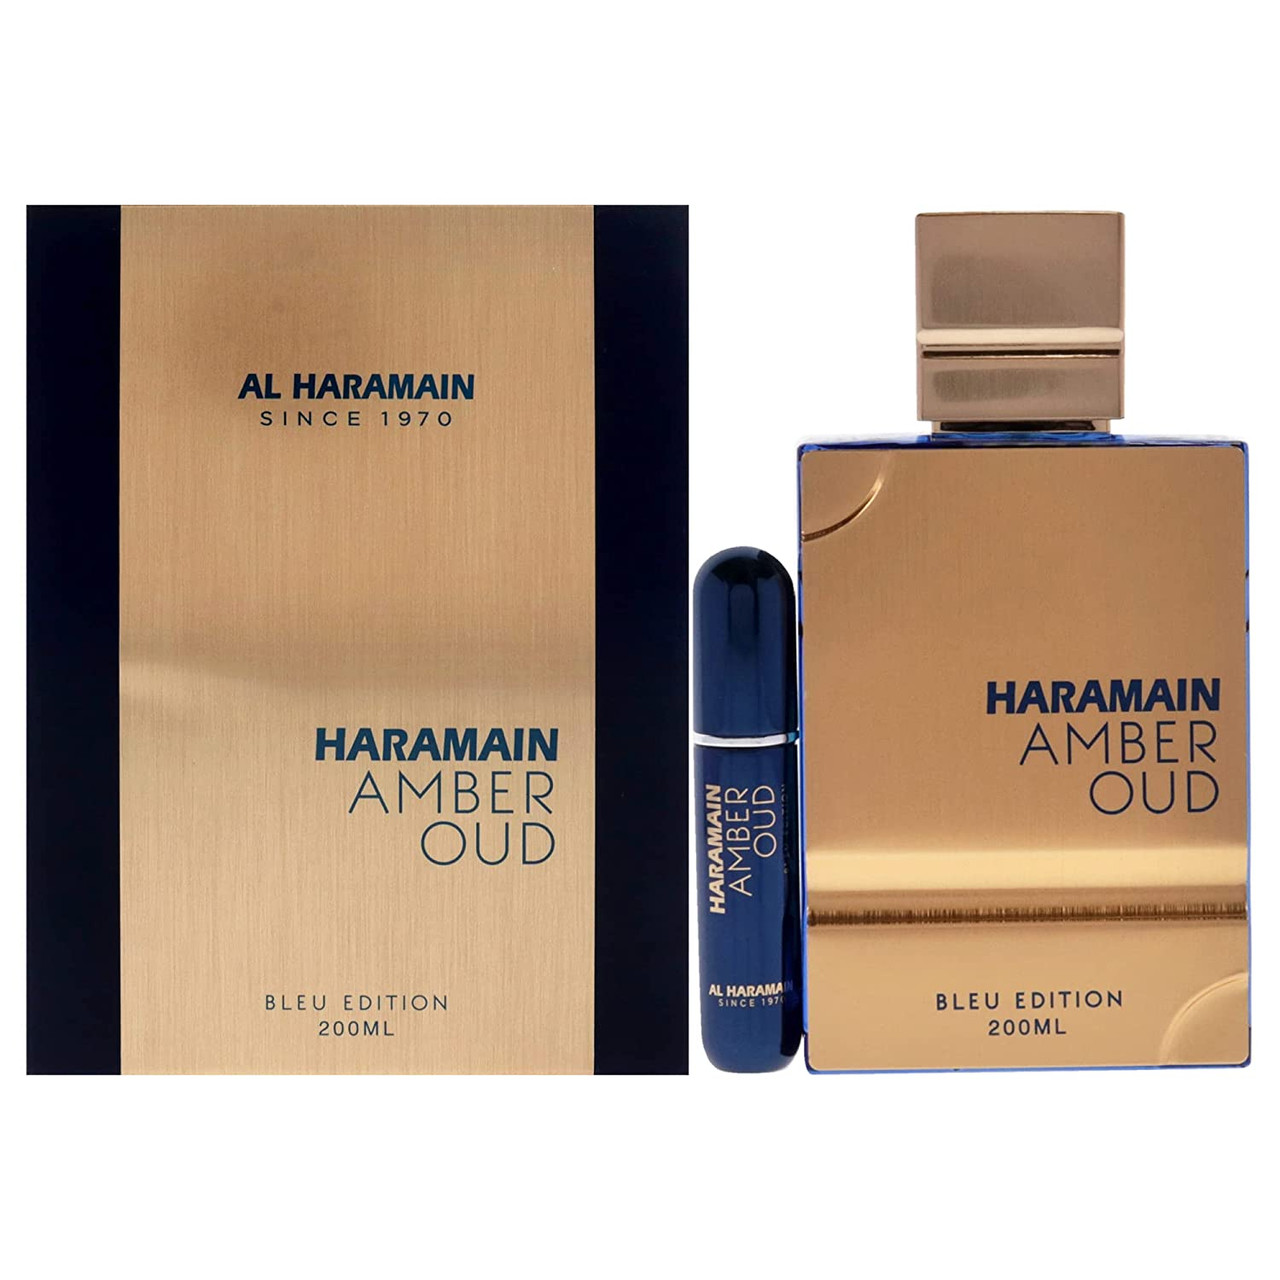 Al Haramain Amber Oud Eau de Parfum (Carbon Edition) 2 oz